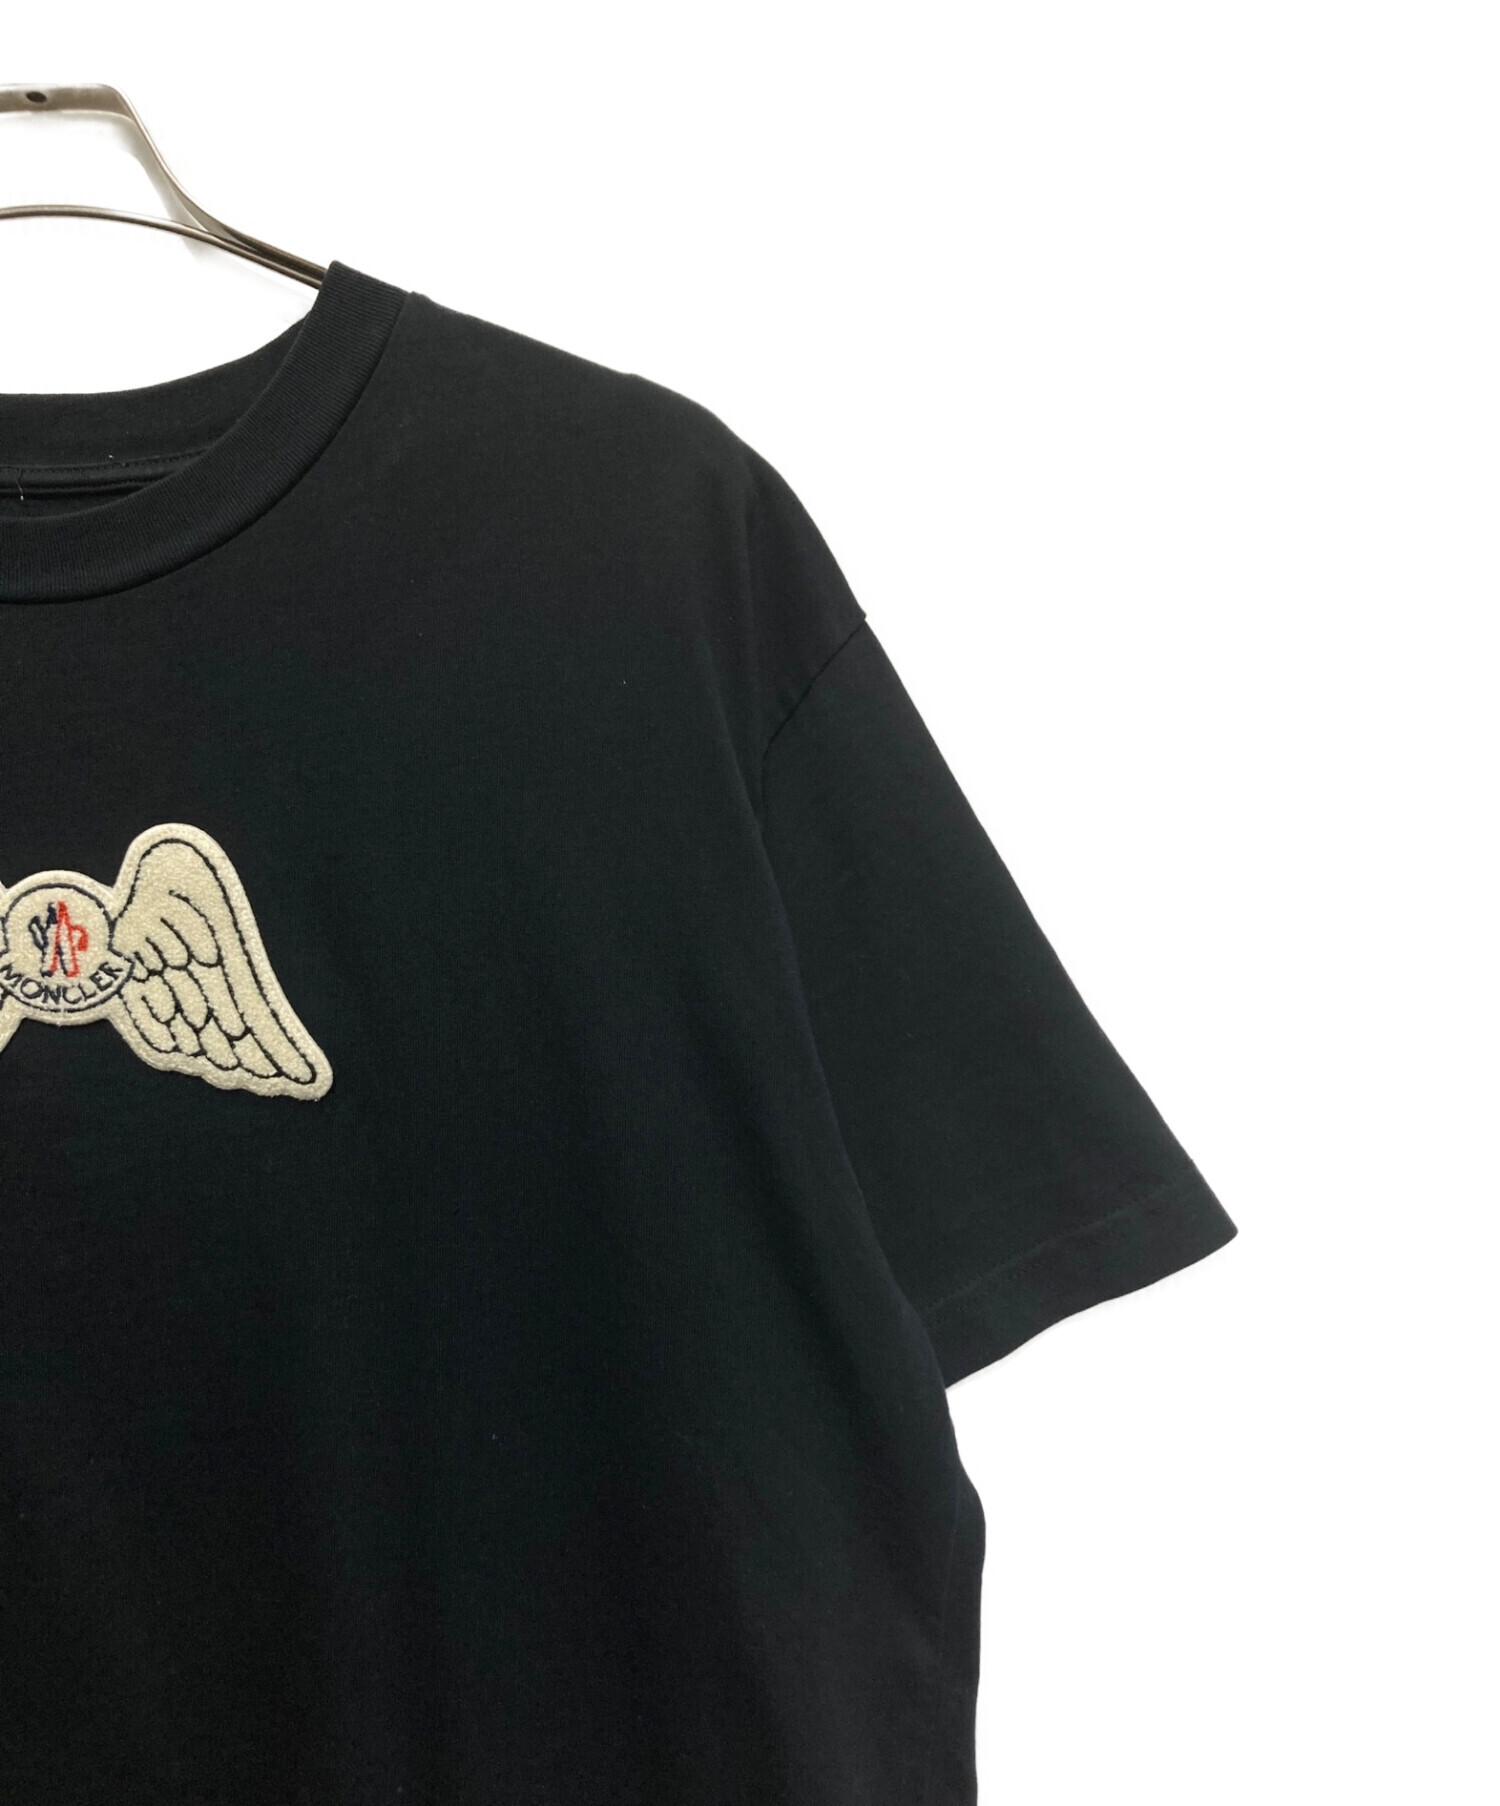 MONCLER (モンクレール) Palm Angels (パーム エンジェルス) コラボTシャツ ブラック サイズ:SIZE XL